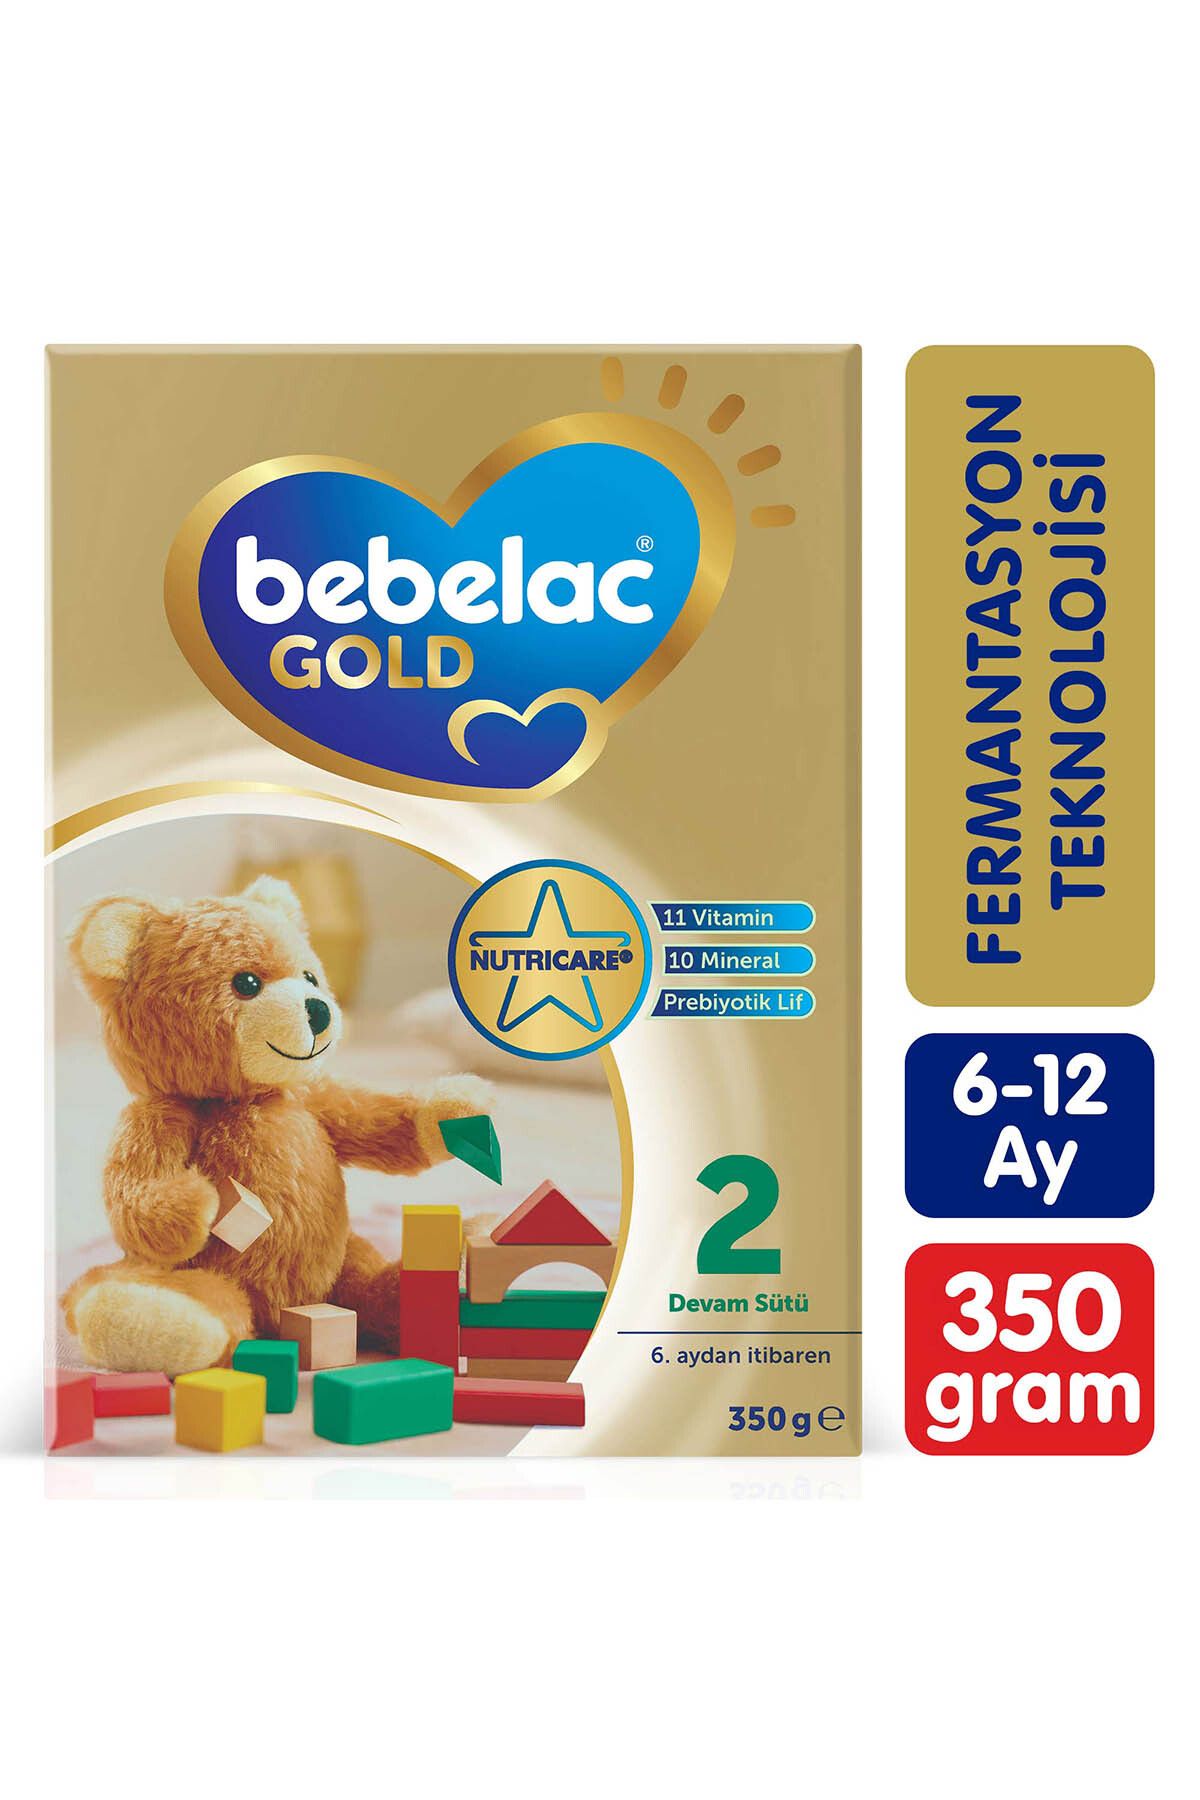 Bebelac Gold 2 Devam Sütü 350 g 6-12 Ay